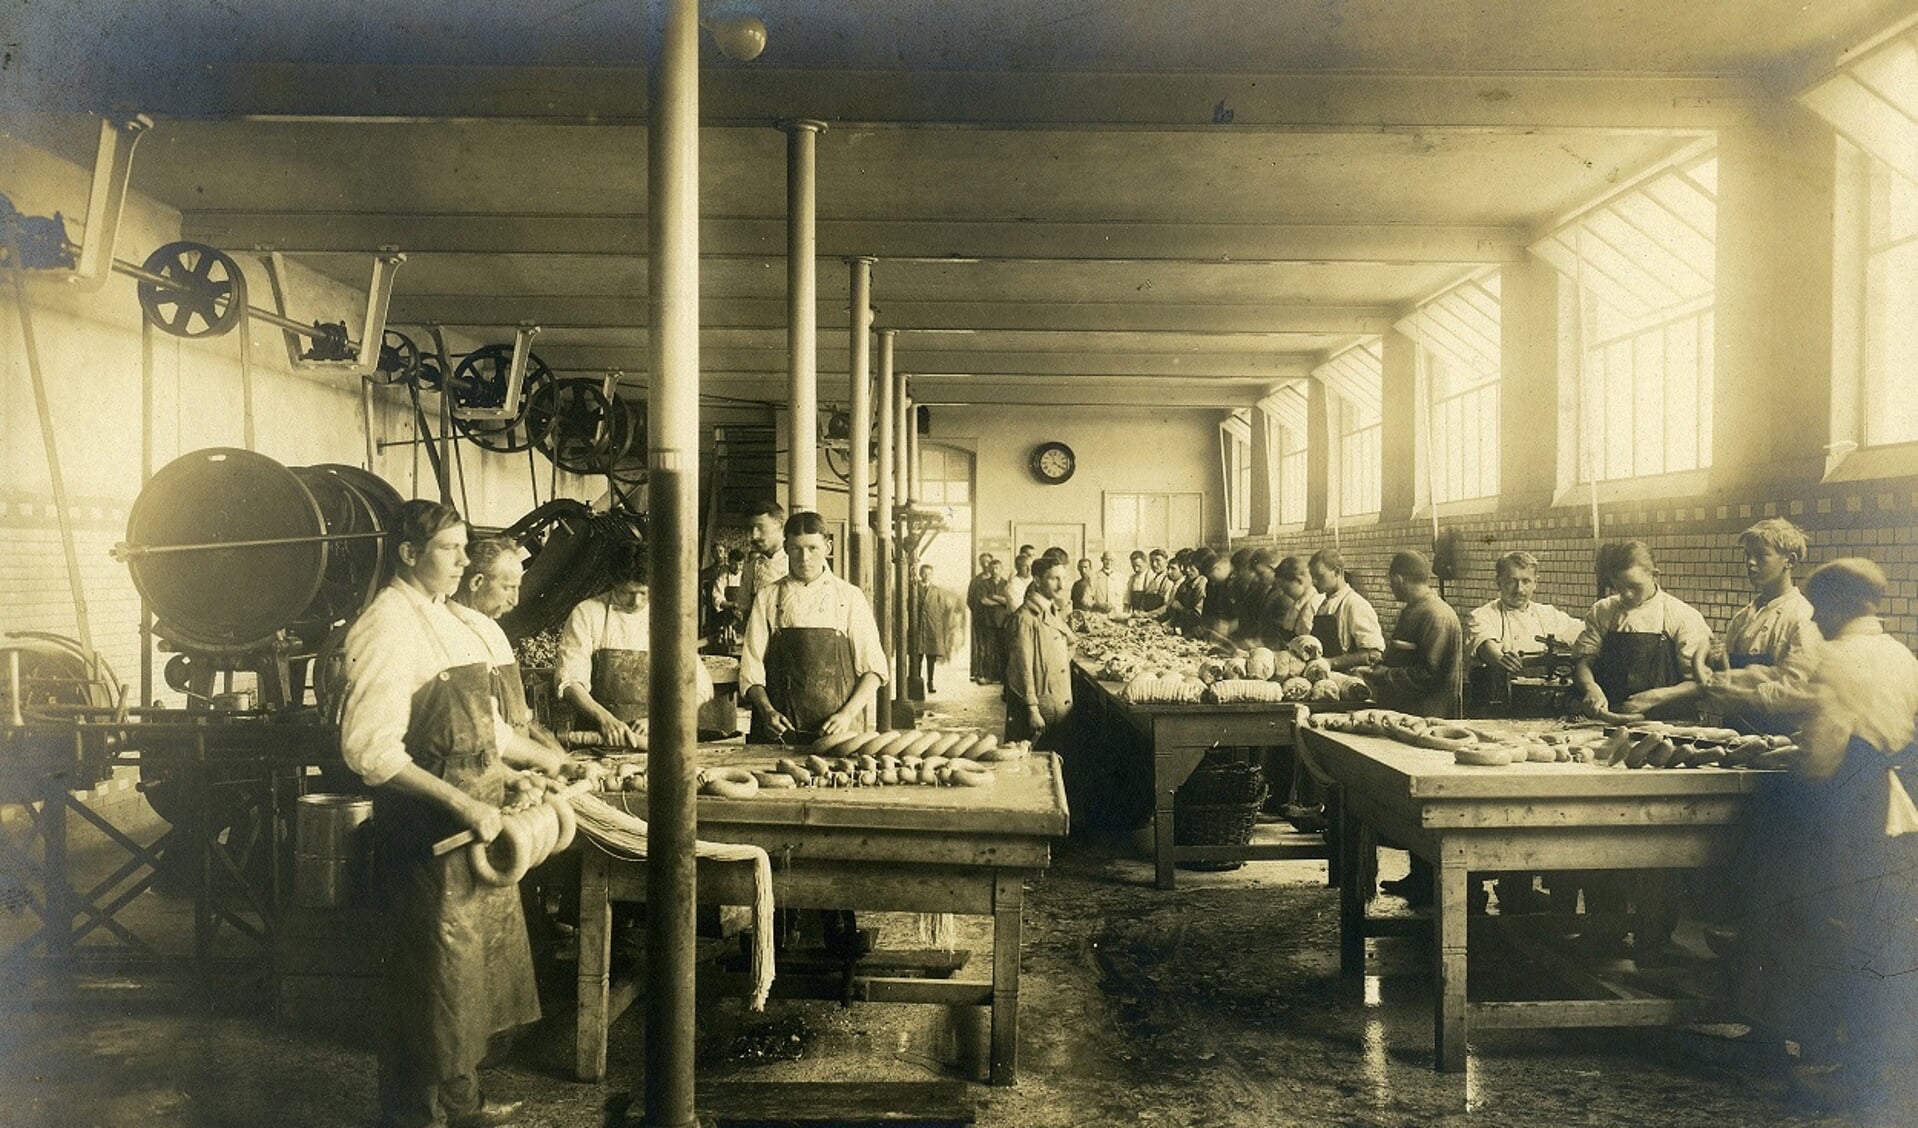 De worstenmakers van Hartog poseren voor de foto. (Foto uit 1916, collectie Stadsarchief Oss)